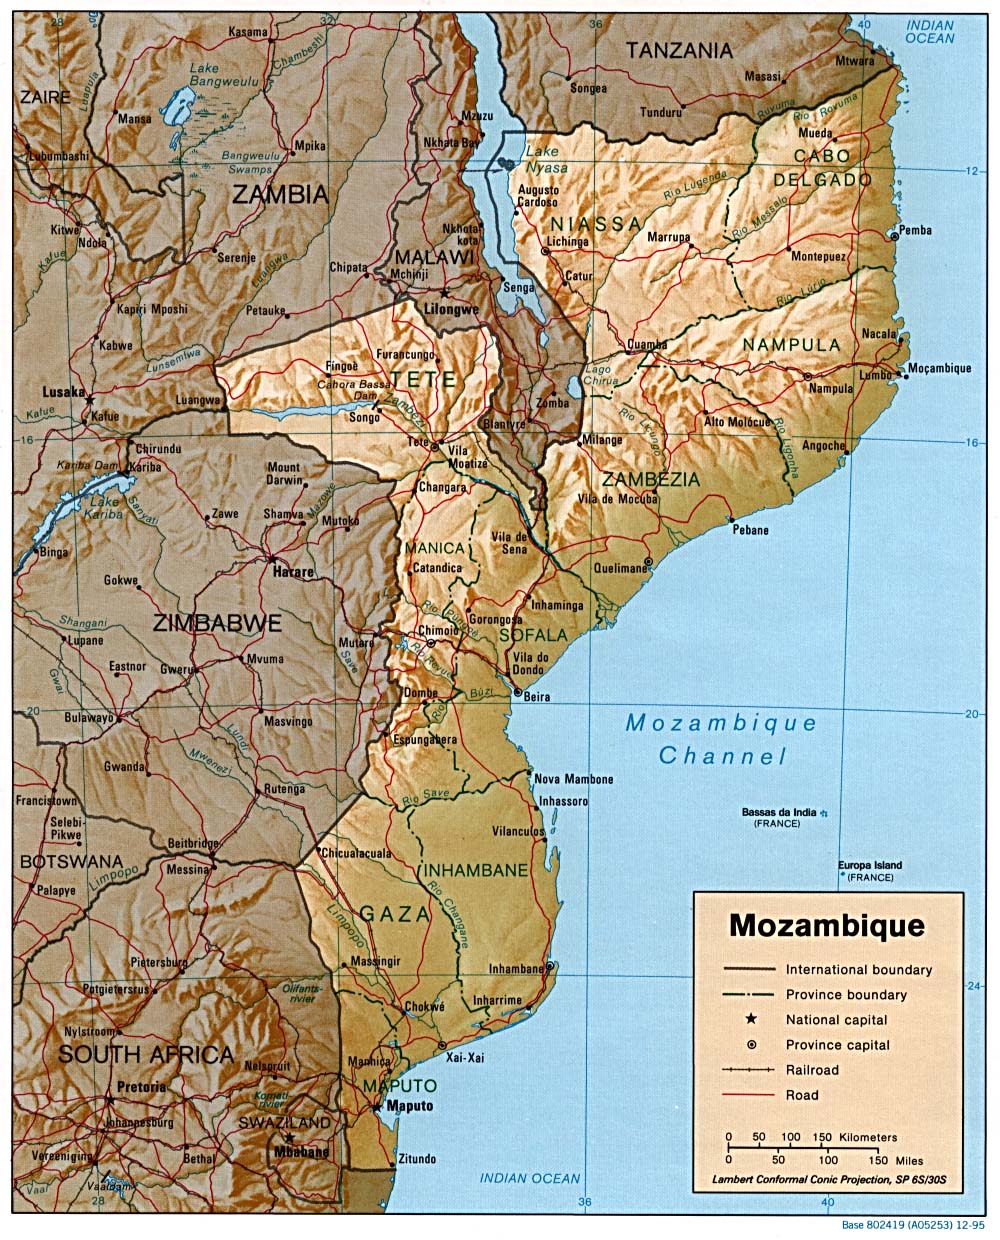 Mozambique, 2003 